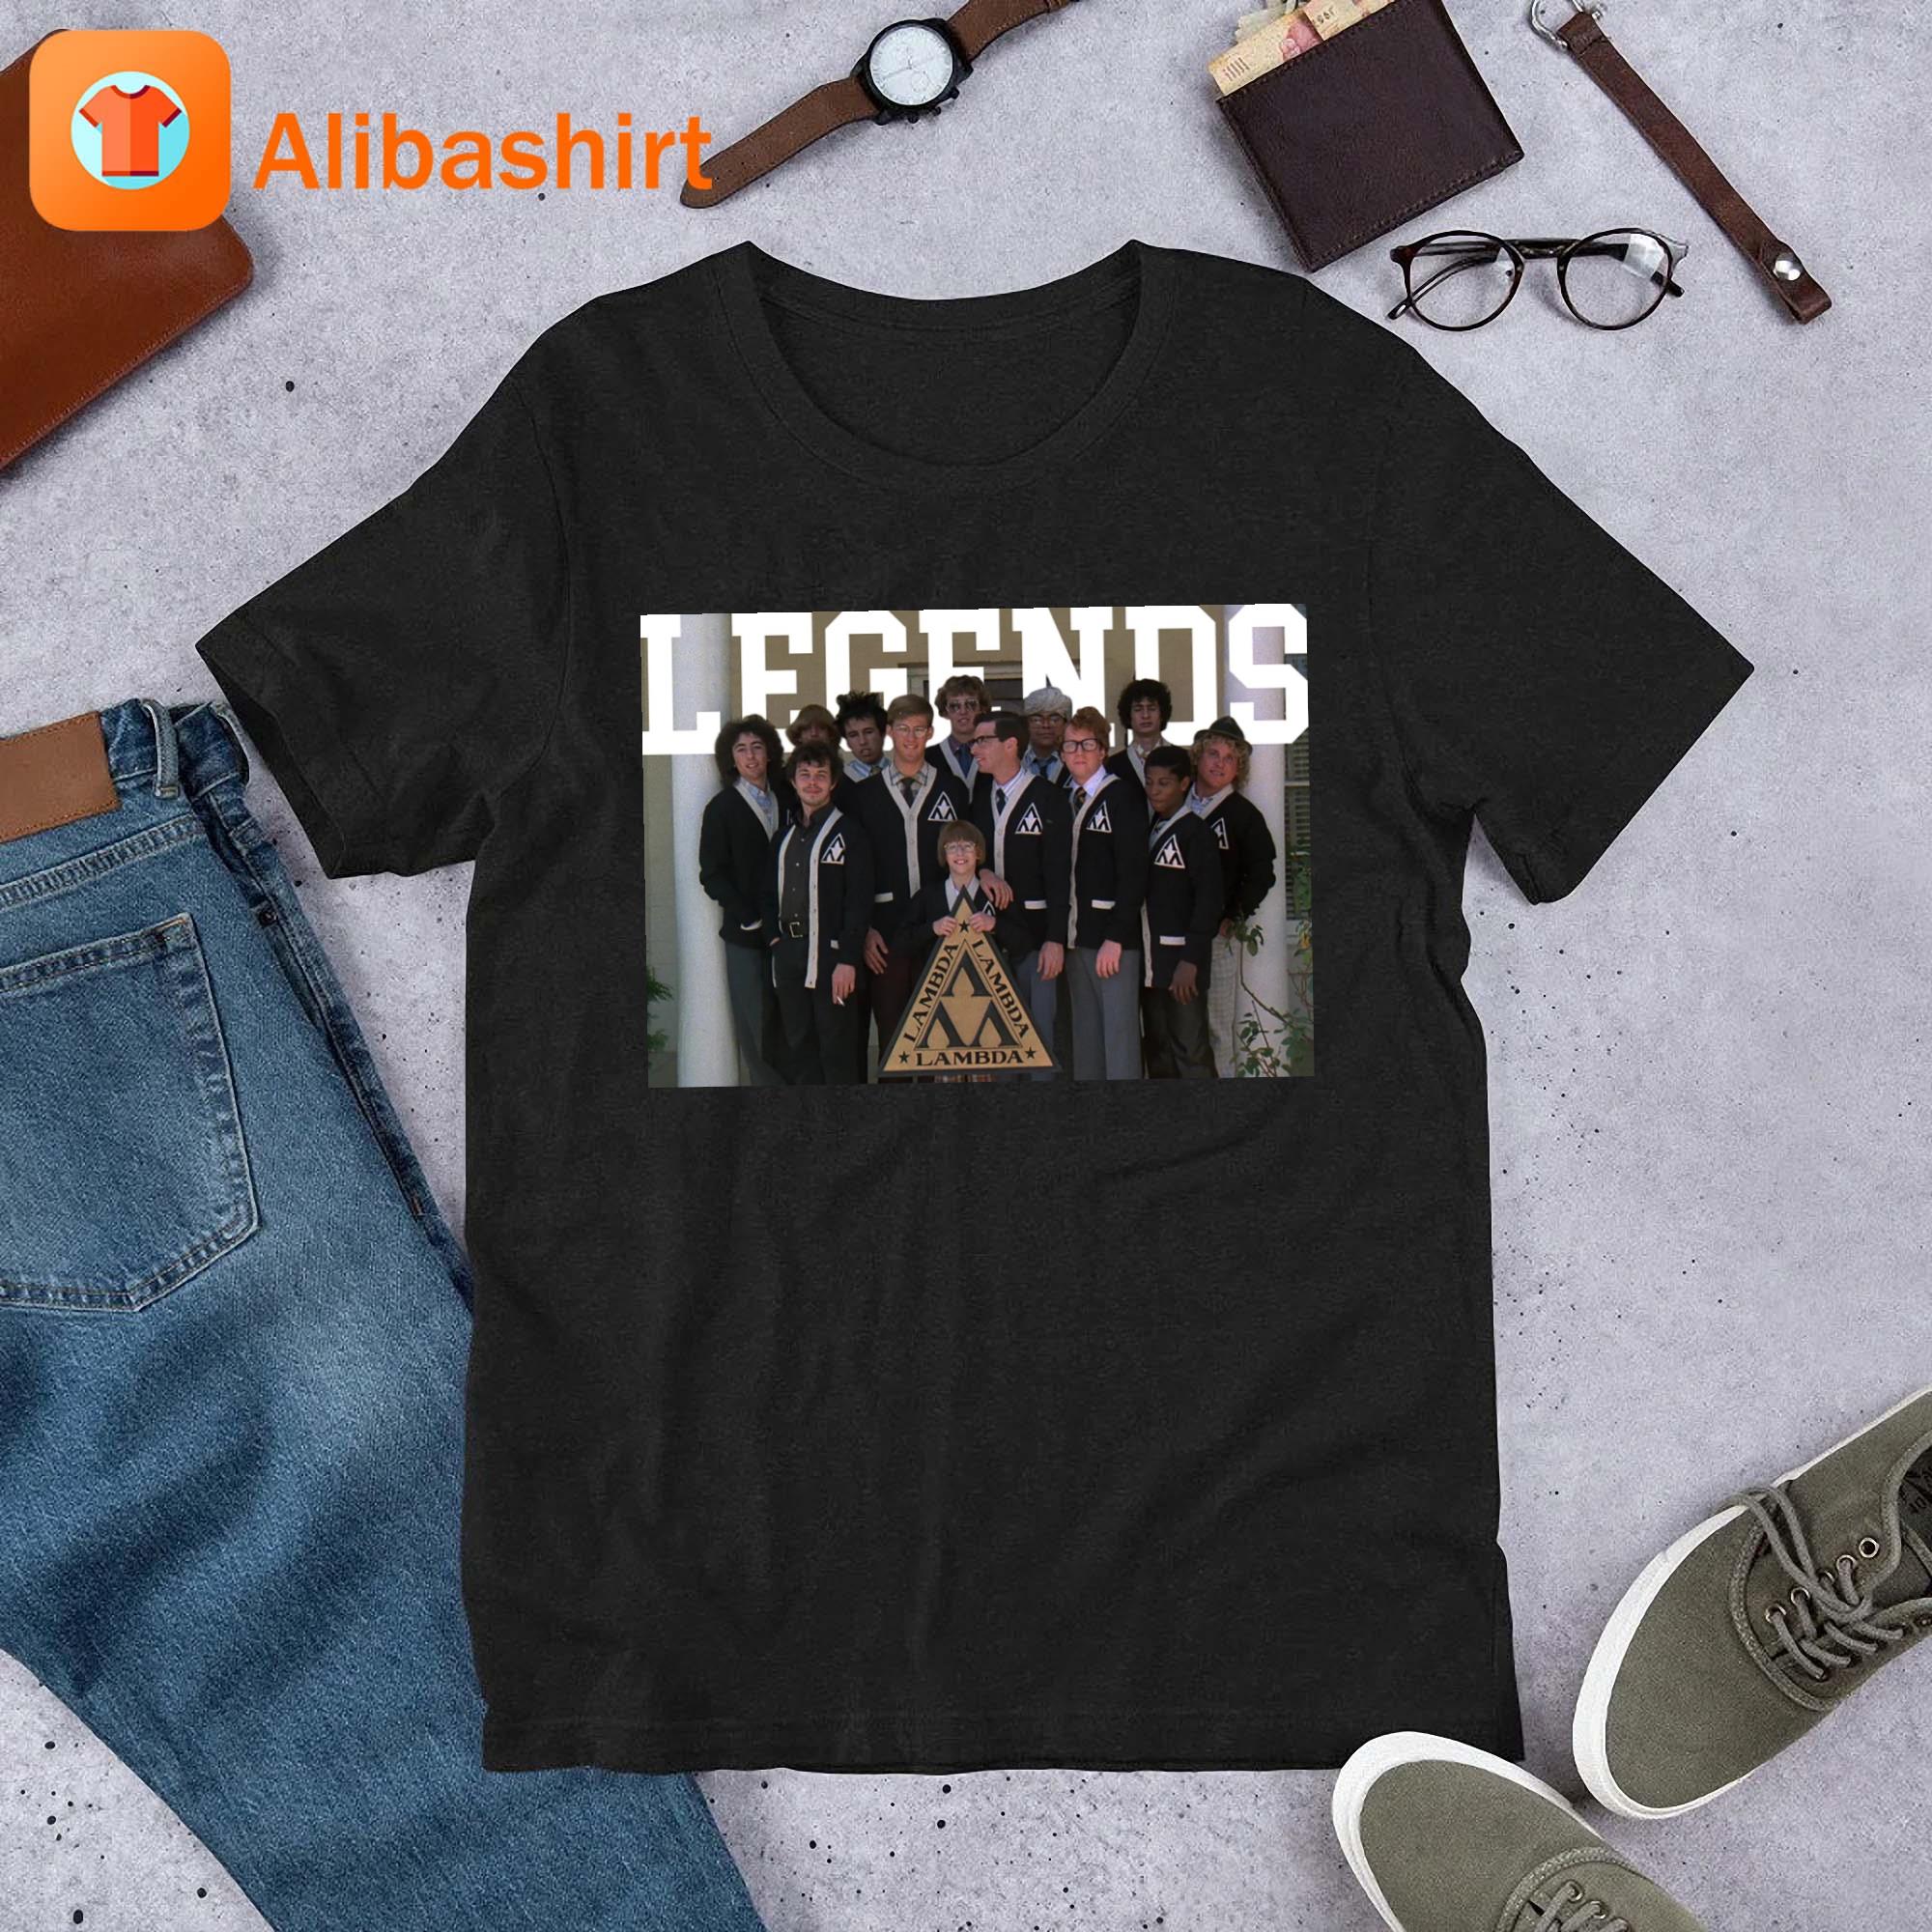 The Lambda Legends Shirt